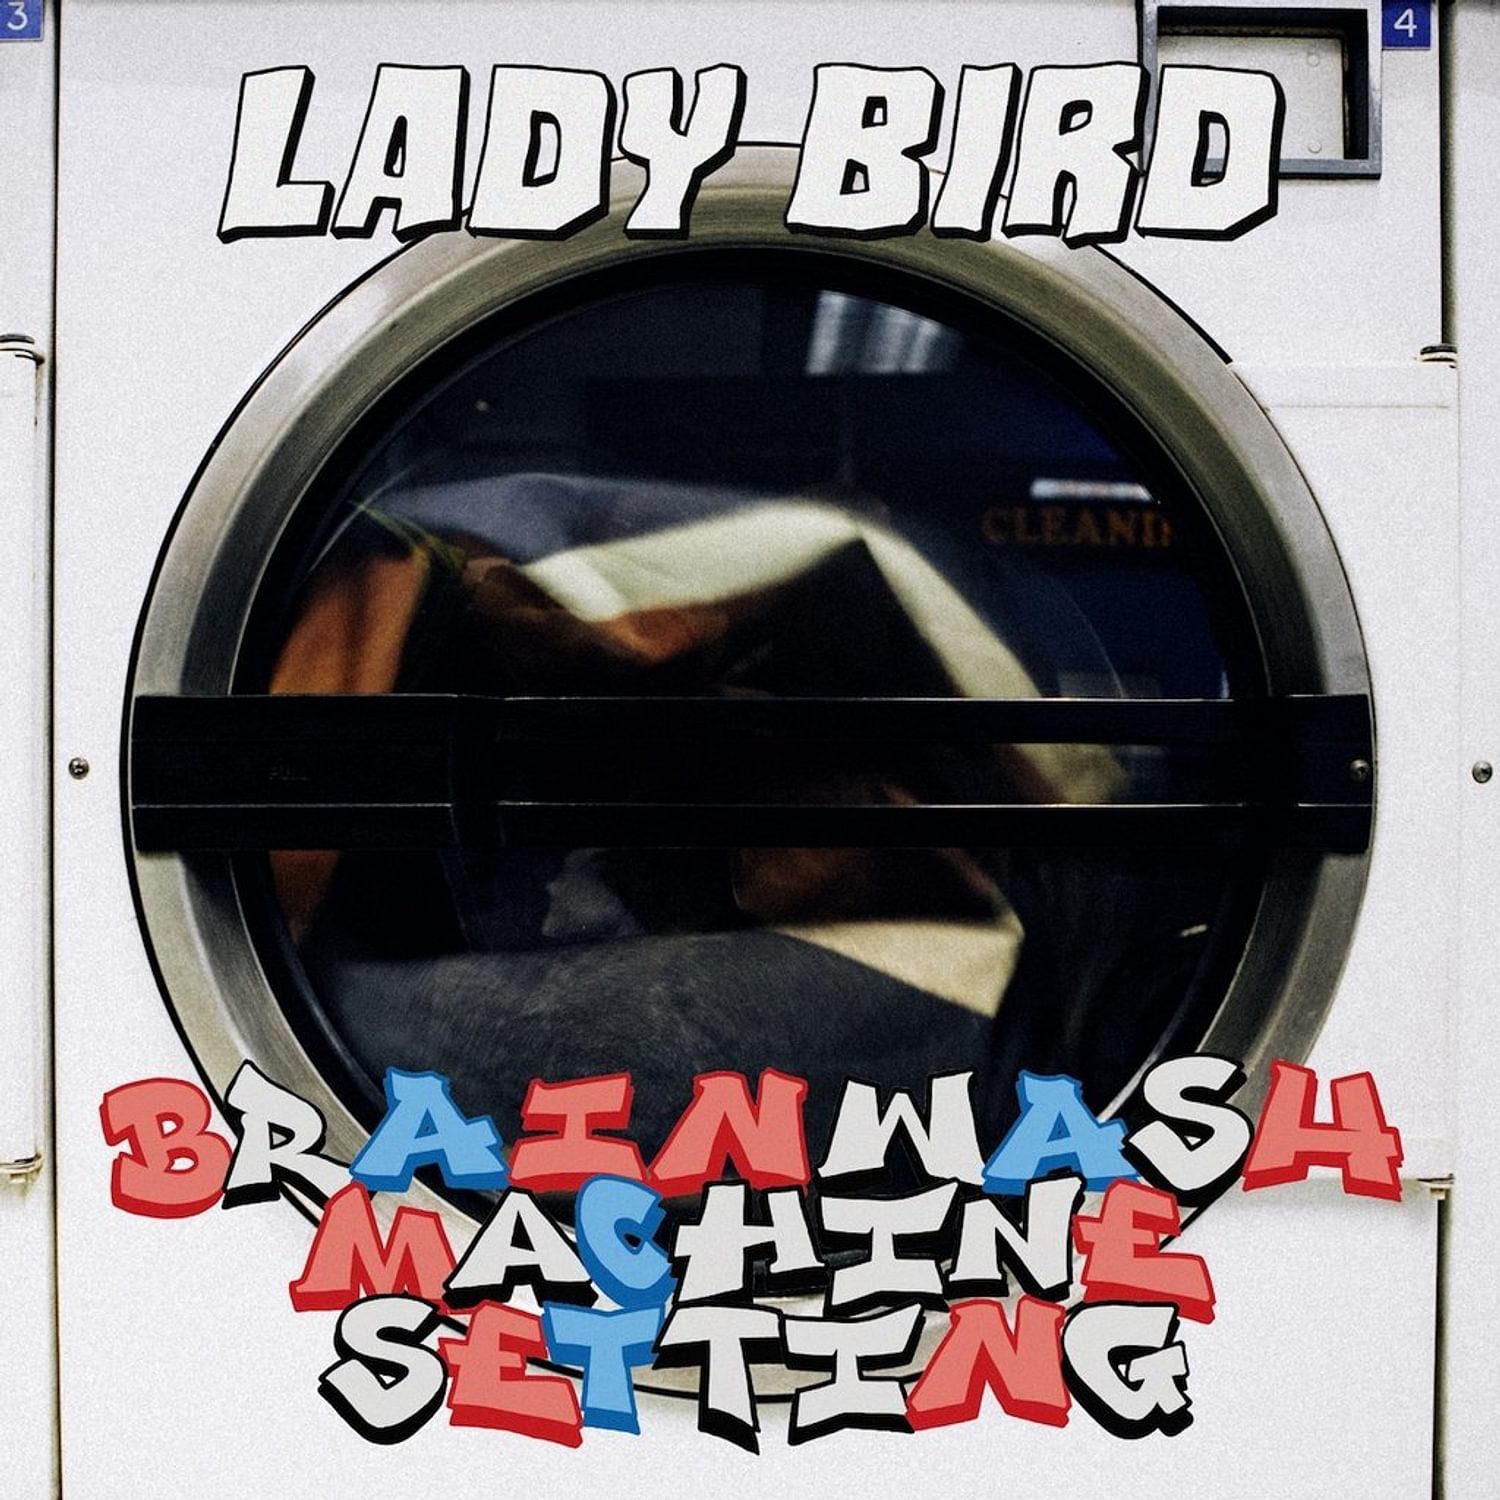 Lady Bird - Brainwash Machine Setting